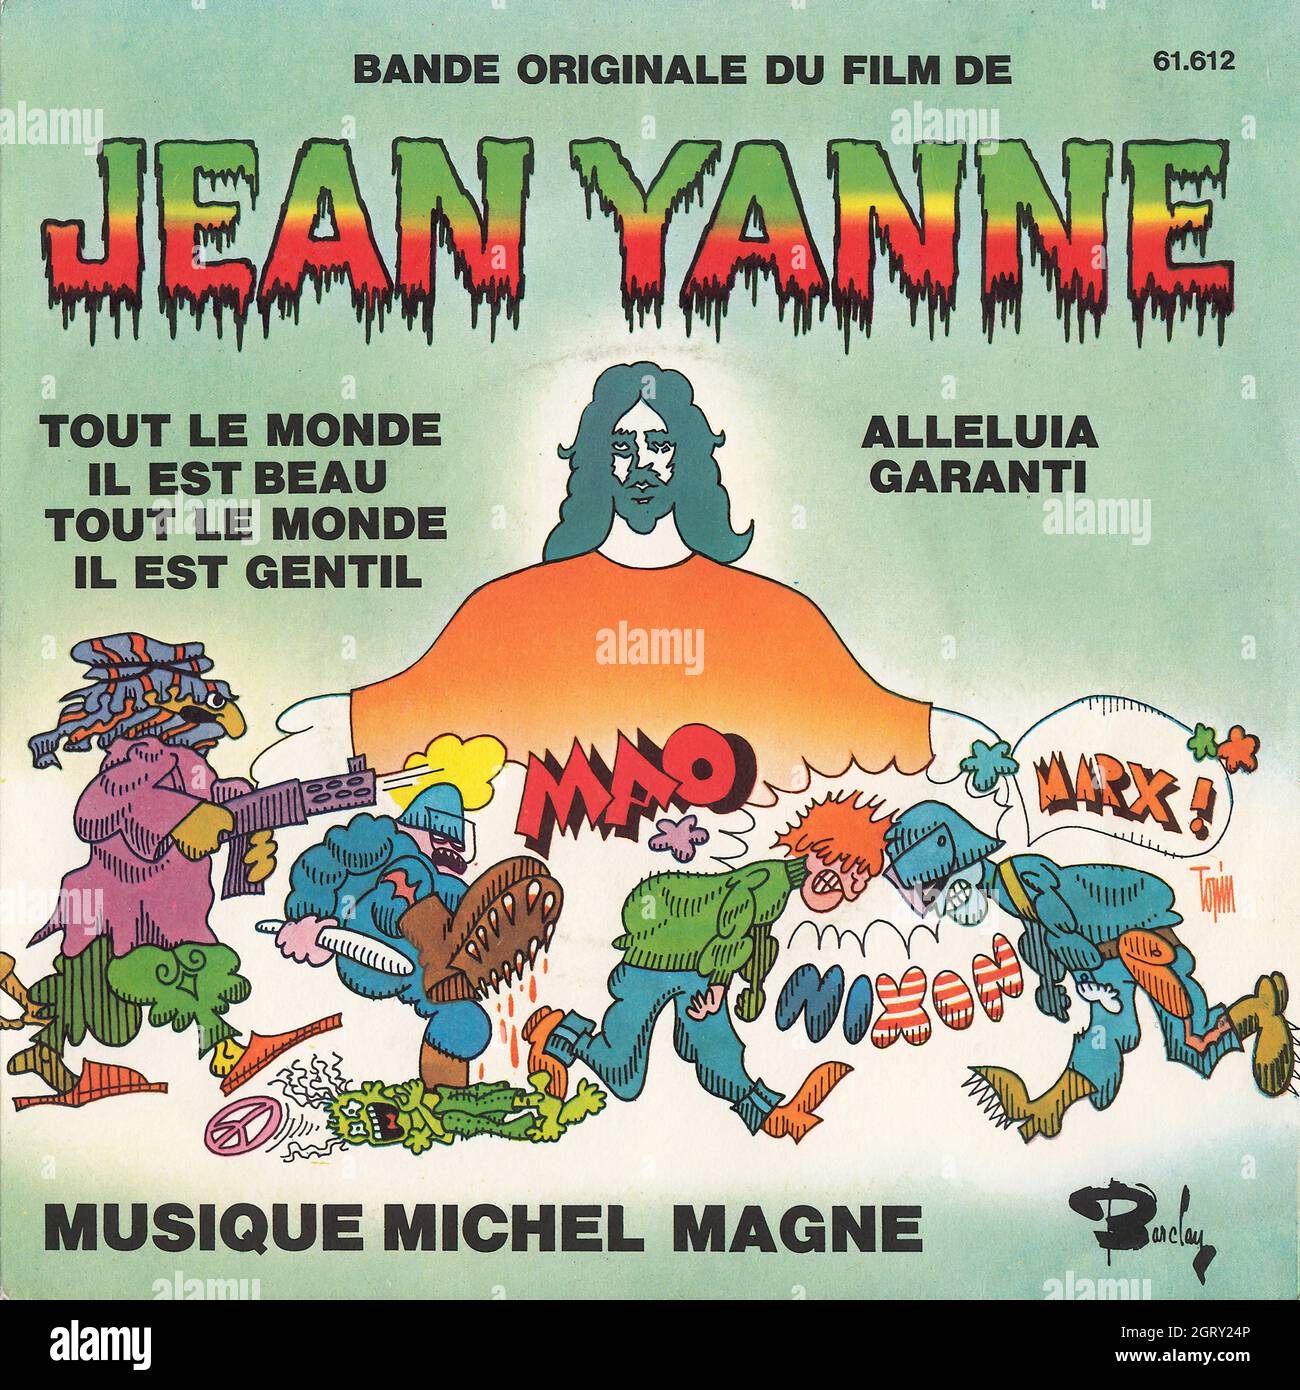 Michel Magne - Jean Yanne - Tout le monde il est beau - Alleluia garanti 45rpm - Vintage Vinyl Record Cover Stock Photo